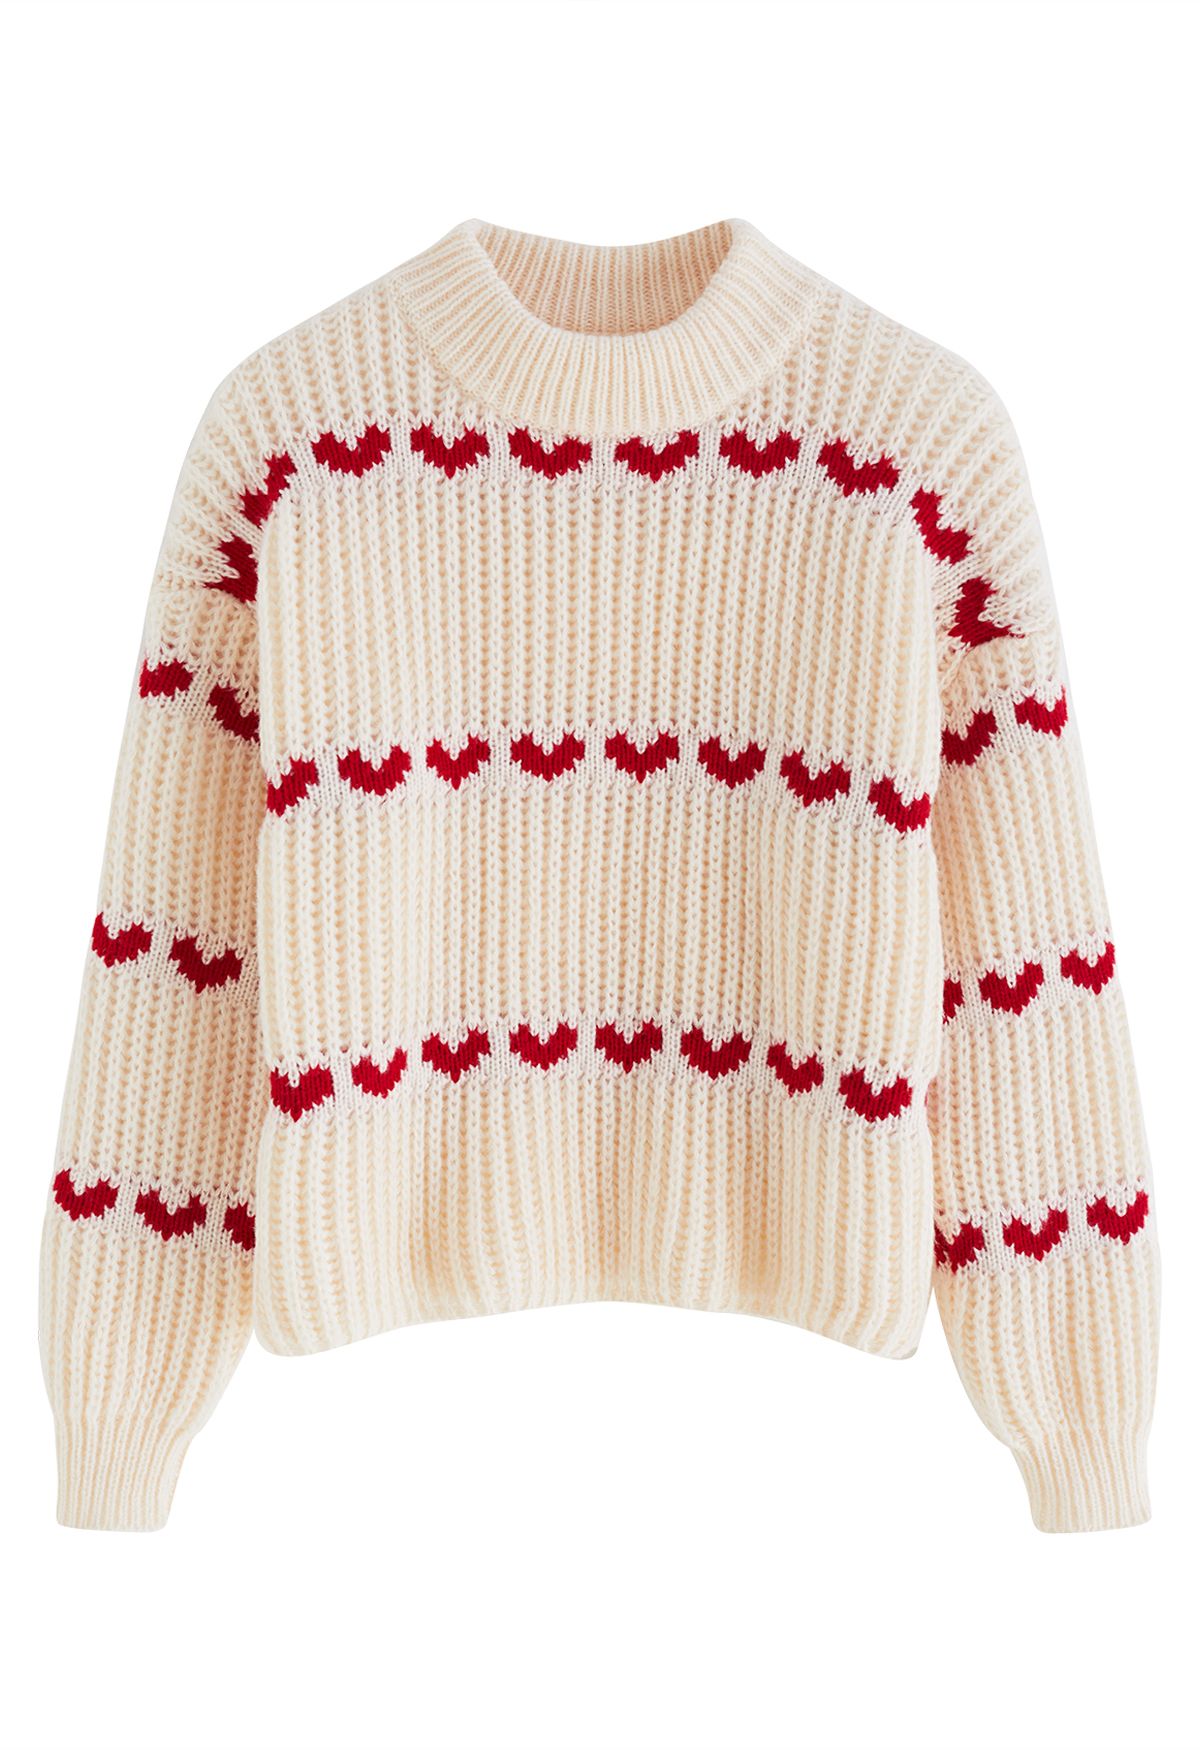 Suéter grueso tejido a mano con filas de corazones